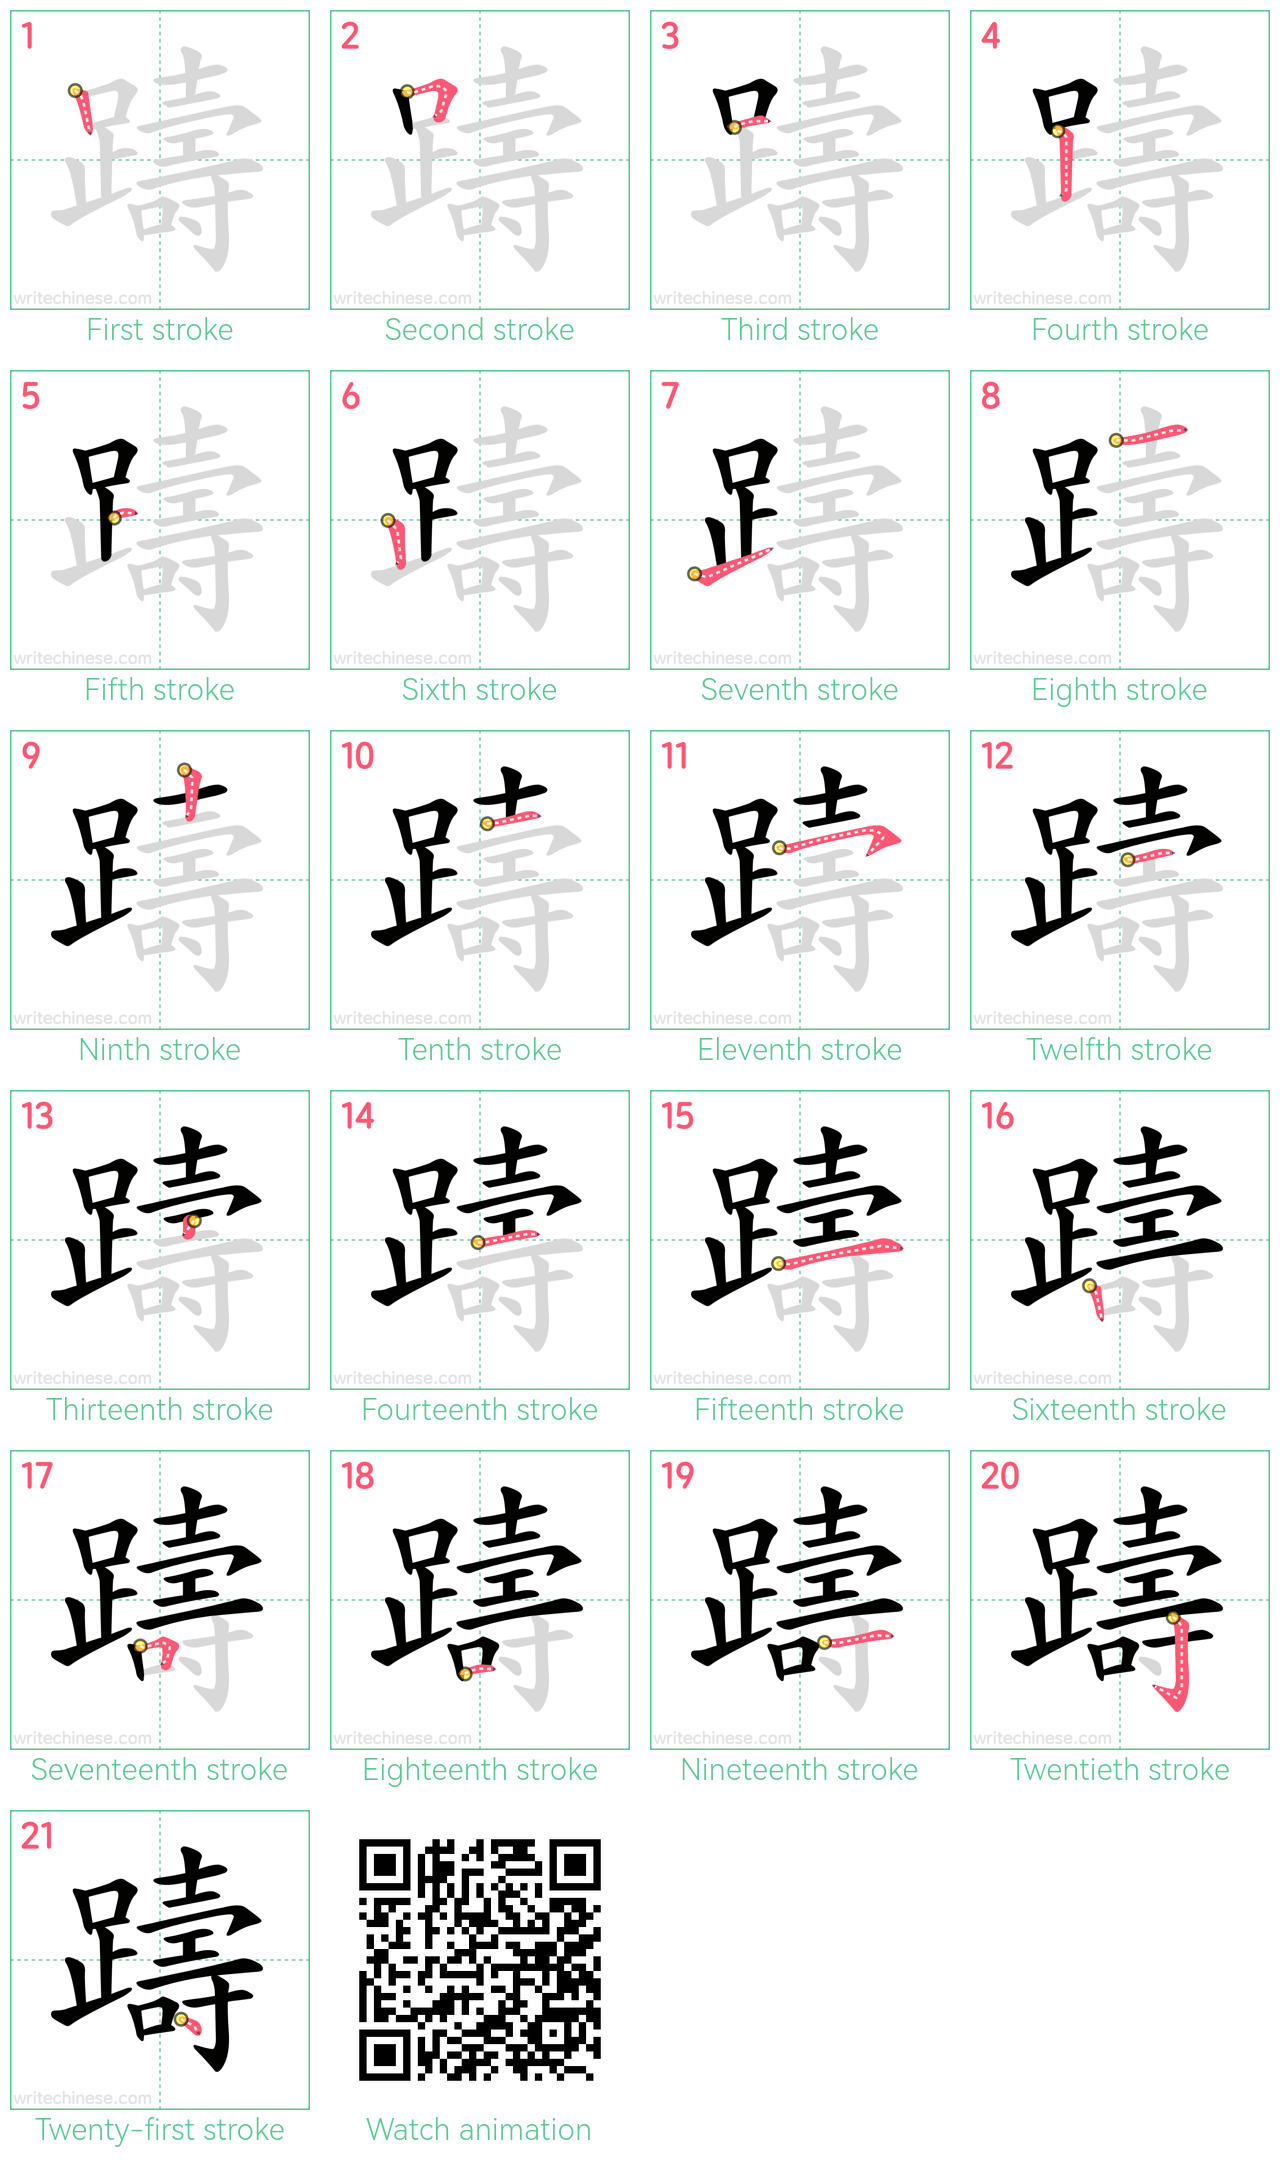 躊 step-by-step stroke order diagrams